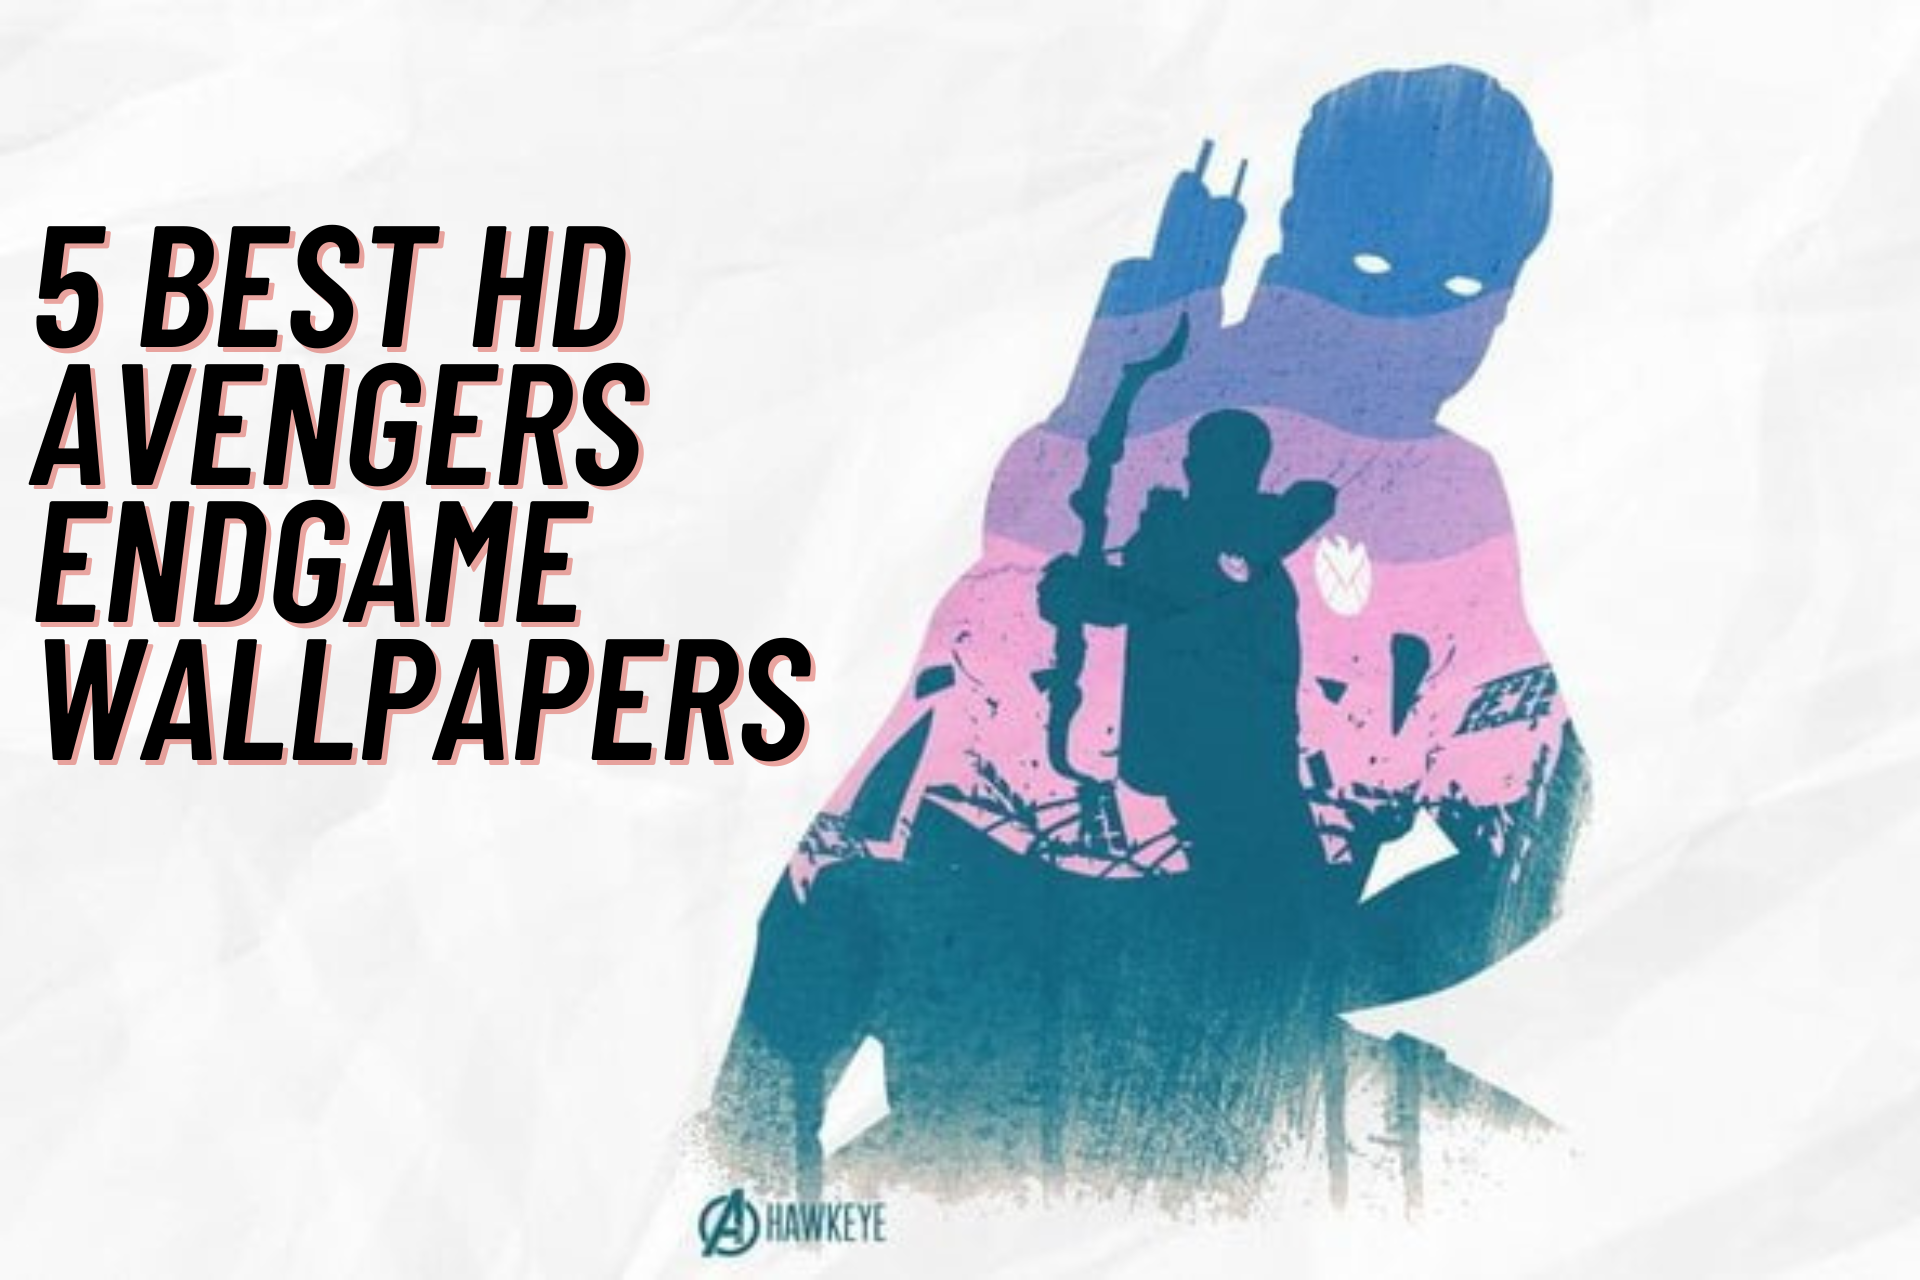 5 Best HD Avengers Endgame Wallpapers for Windows 10